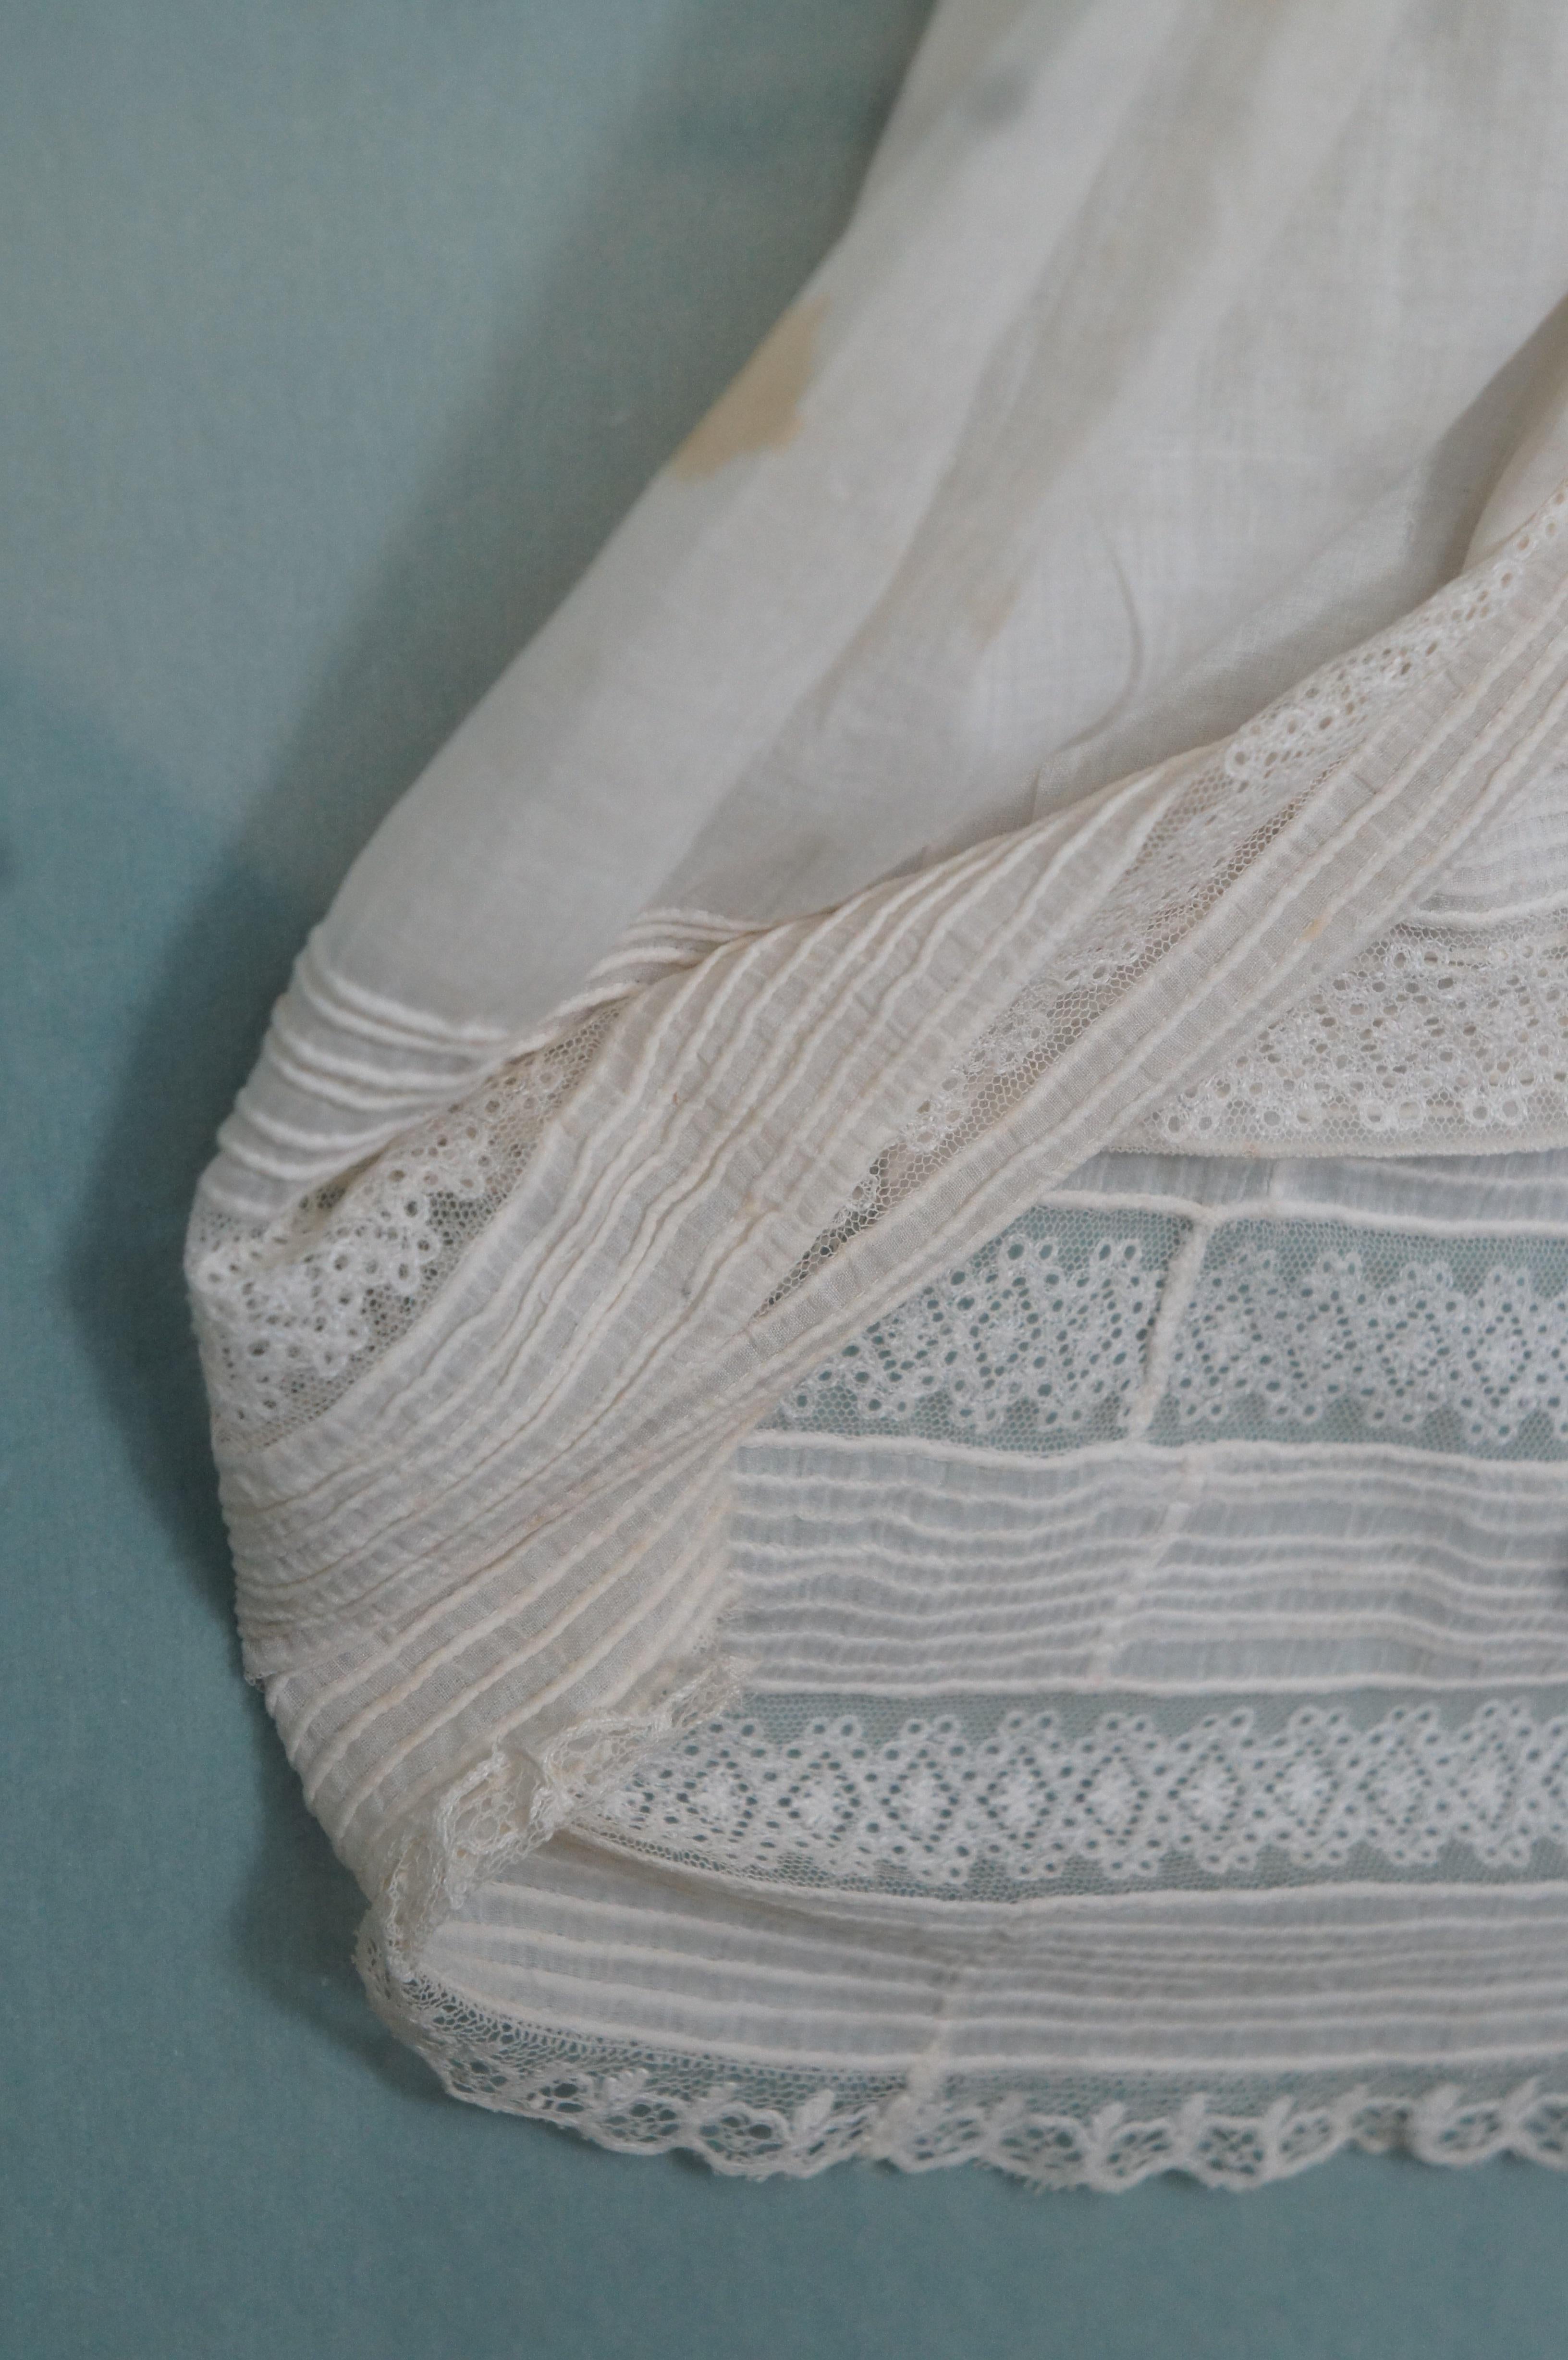 Ancienne robe de baptême pour bébé en dentelle du 19ème siècle - Boîte d'ombre - 31